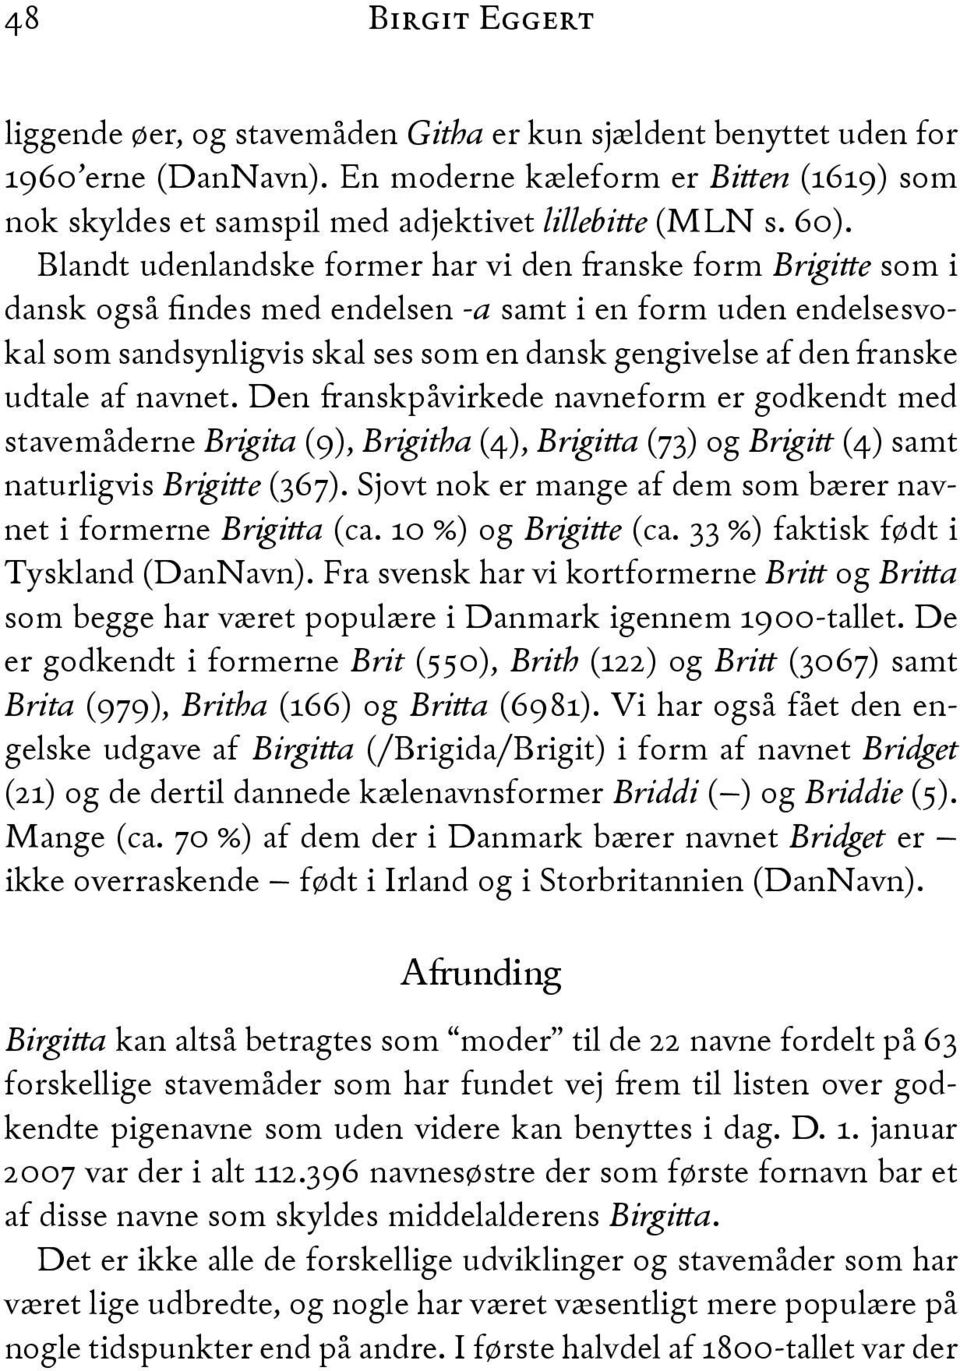 Blandt udenlandske former har vi den anske form Brigi"e som i dansk også findes med endelsen -a samt i en form uden endelsesvokal som sandsynligvis skal ses som en dansk gengivelse af den anske